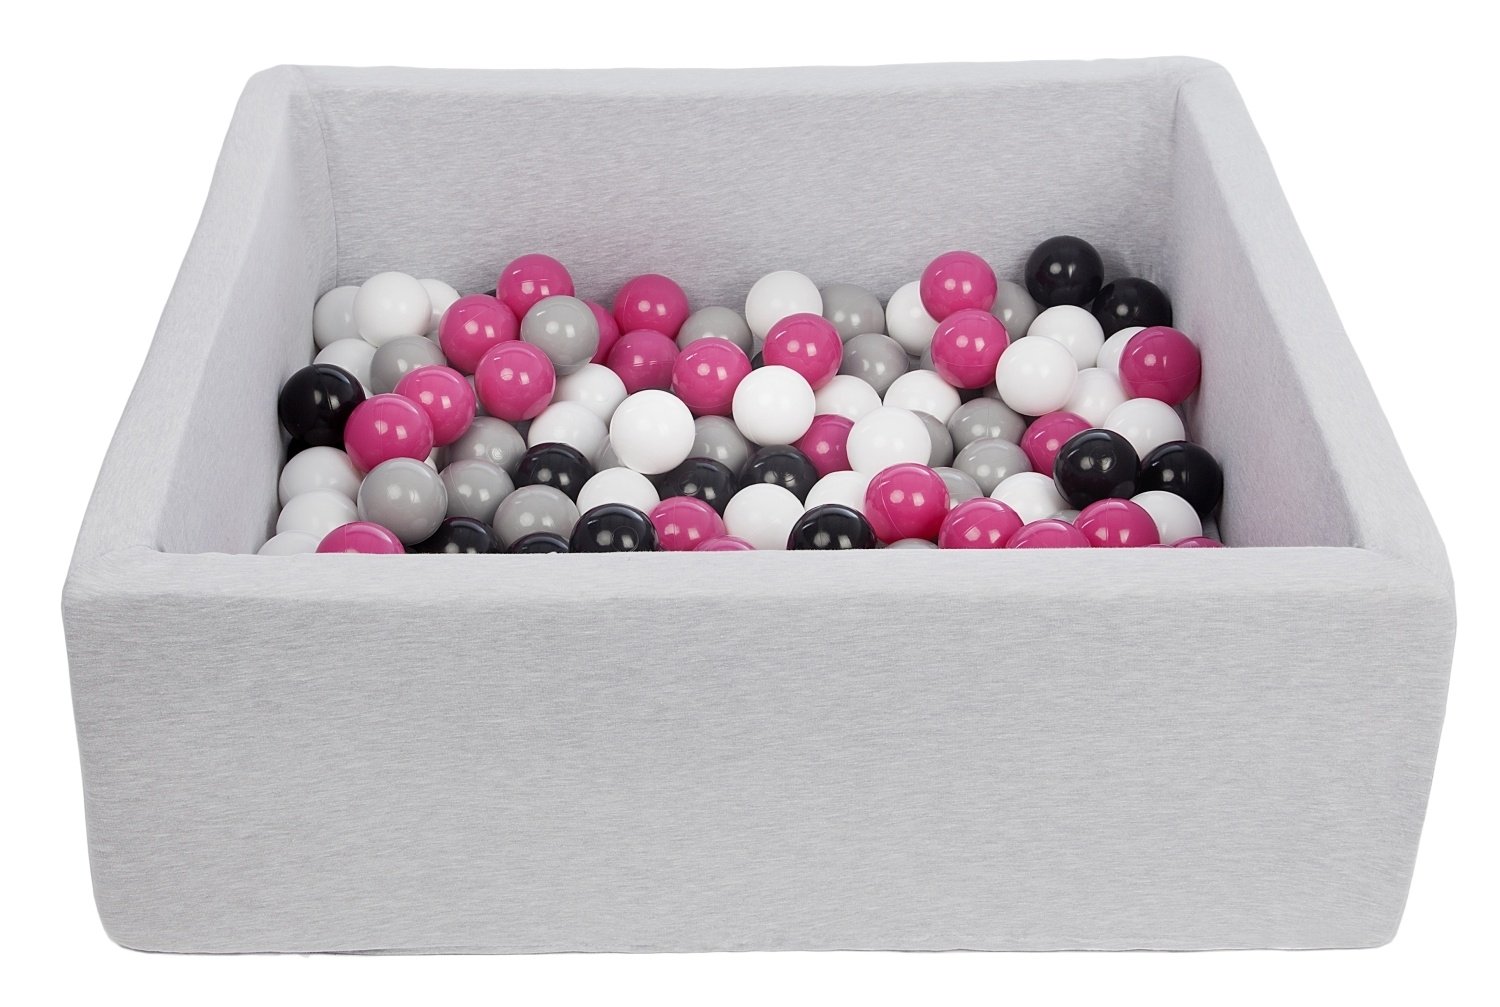 Piscine à balles carré pour bébé avec 150 balles 90x90cm gris clair balles rose